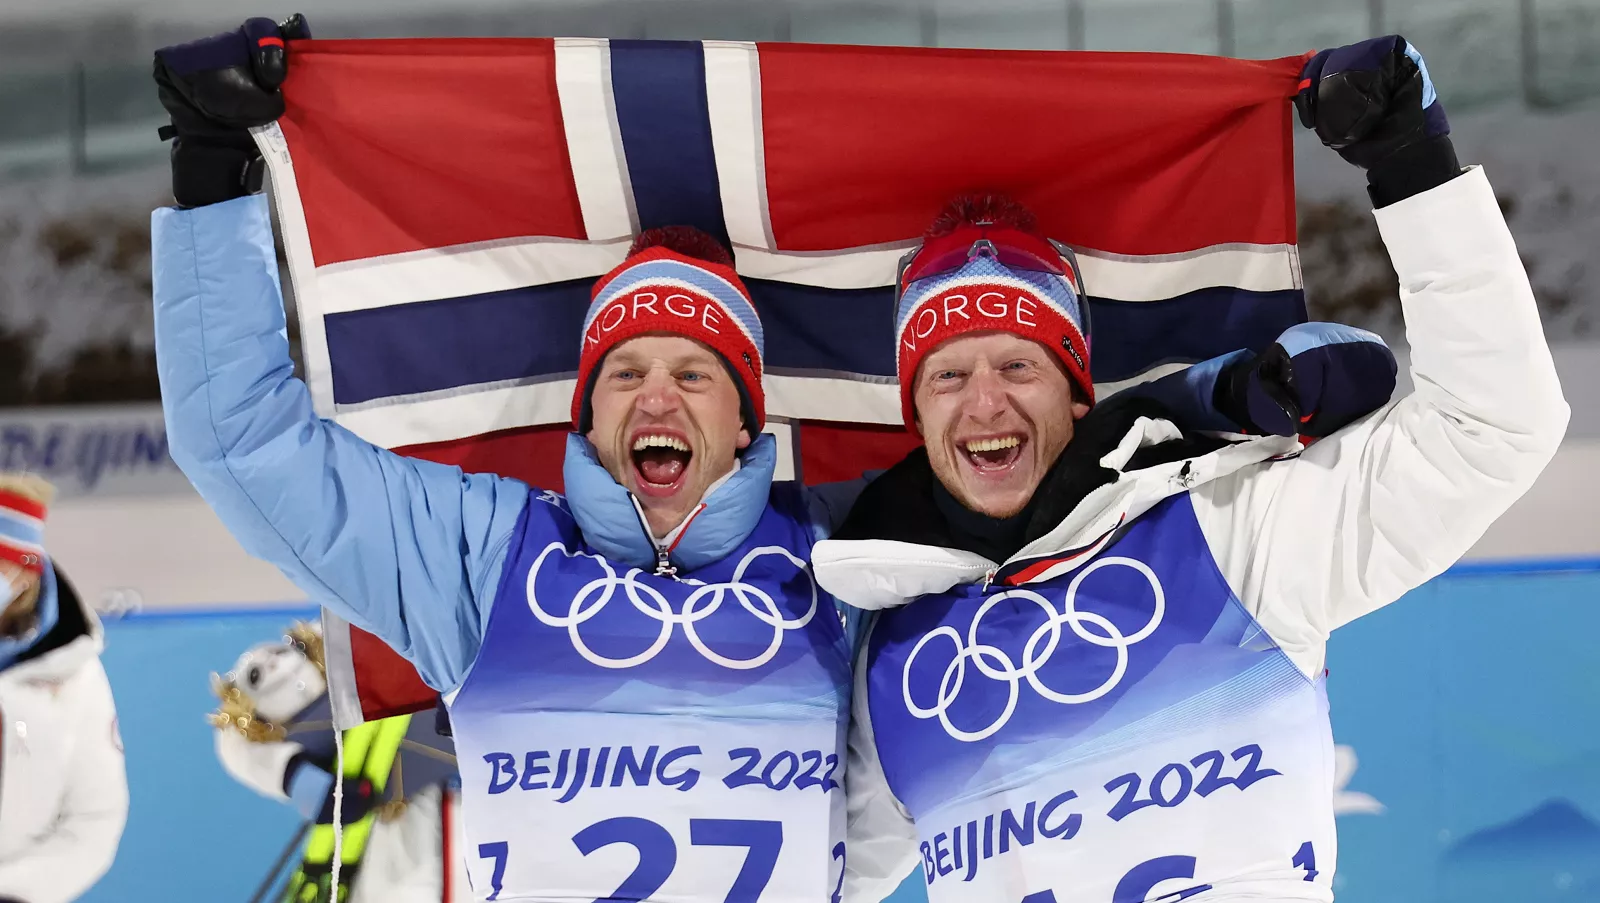 Брати Бо принесли сьогодні дві медалі Норвегії